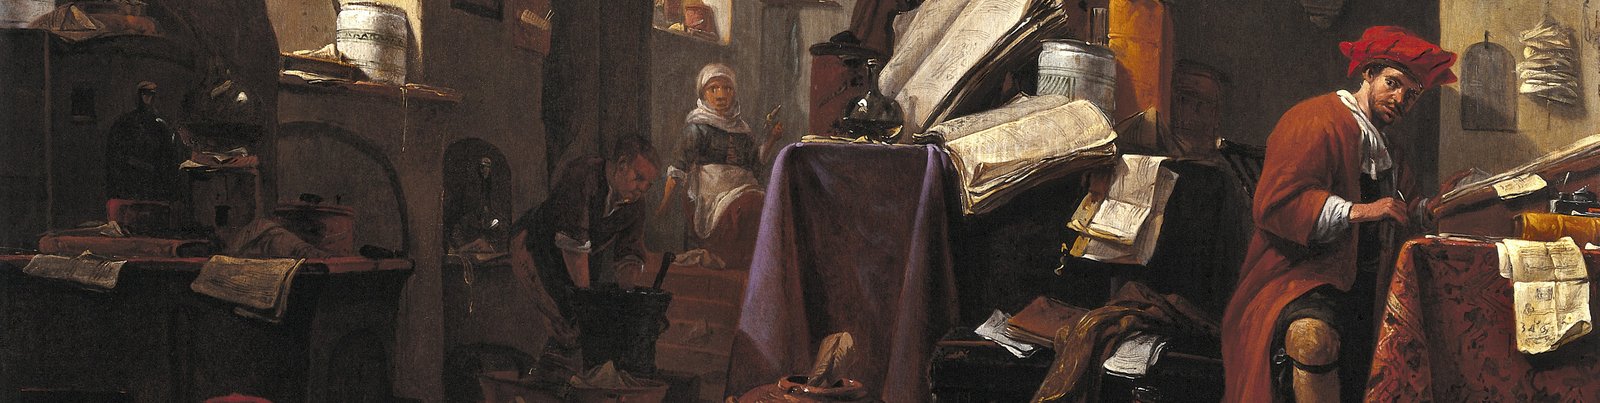 Ausschnitt aus dem Gemälde "Interieur mit Alchemist" von Thomas Wyck